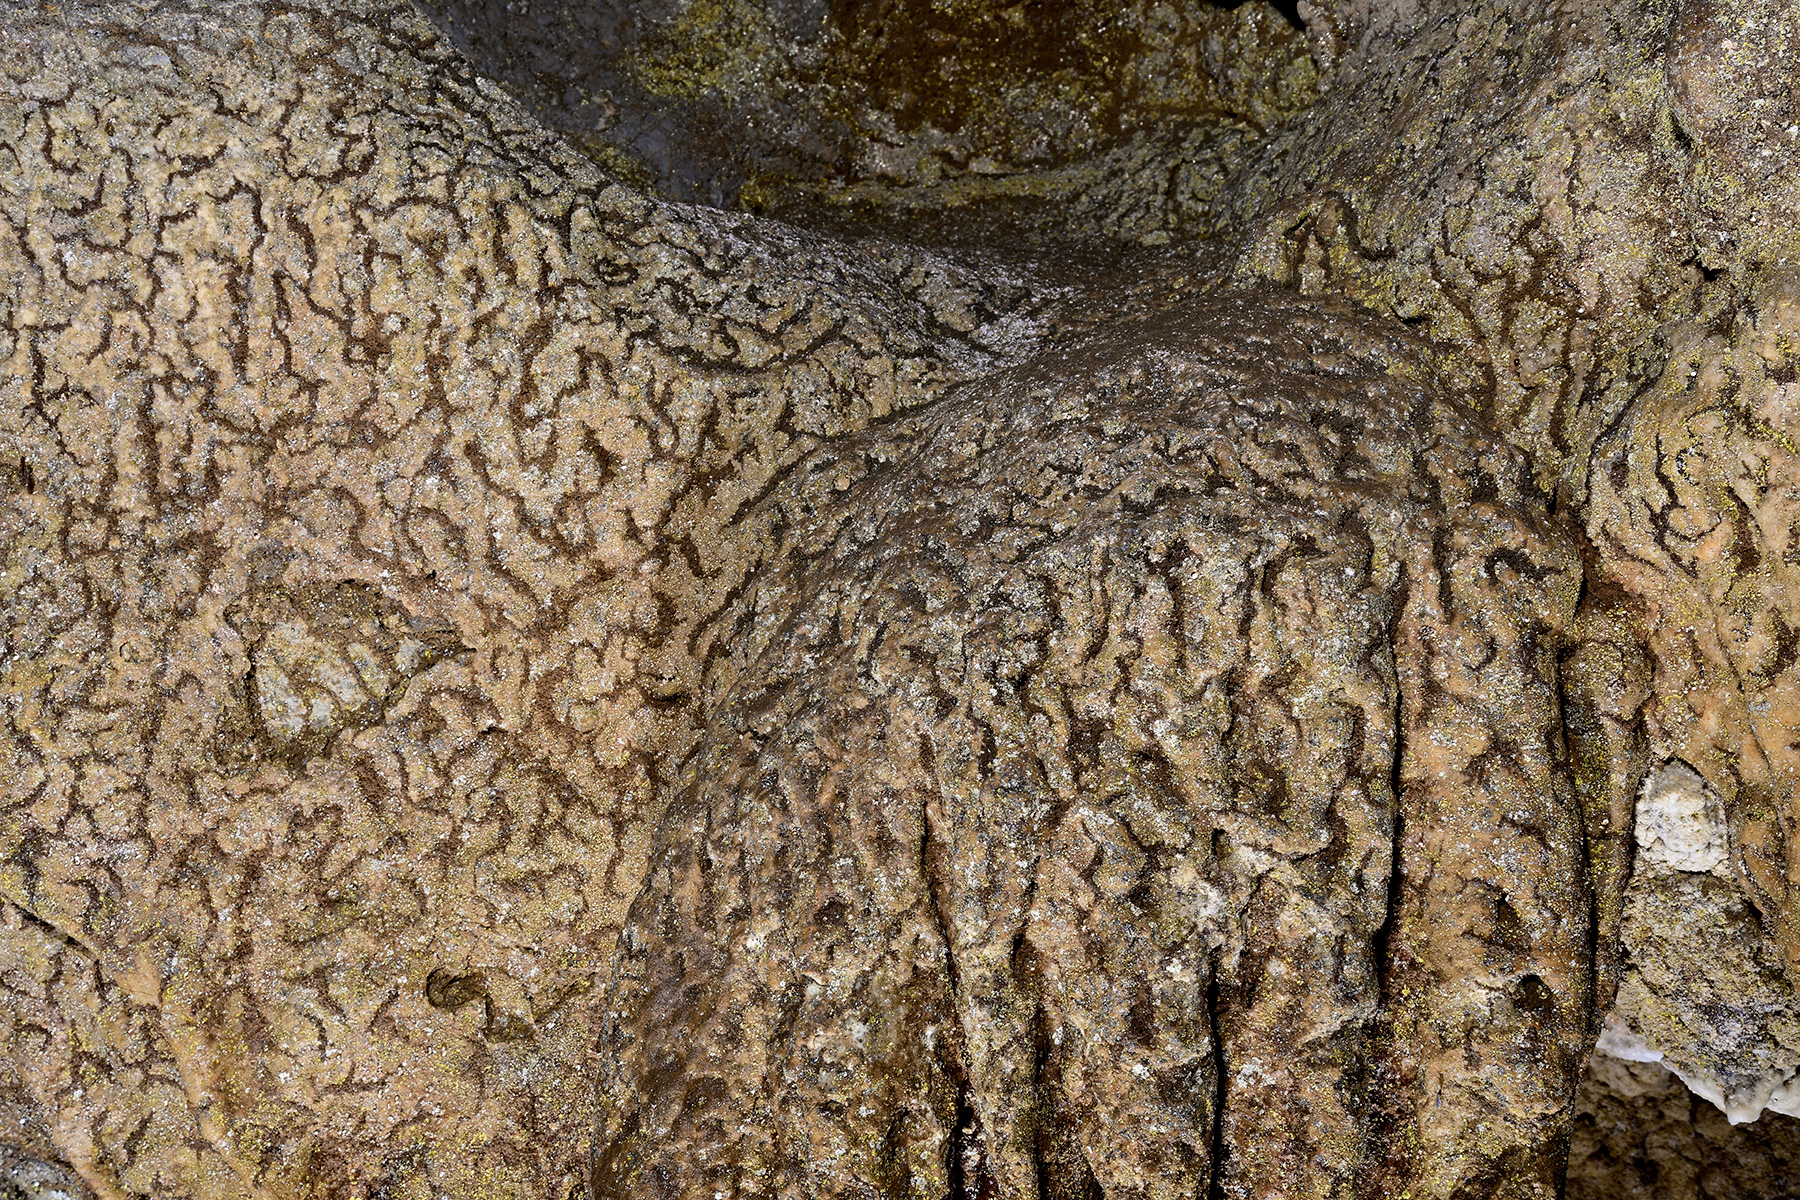 Grotte de la Maoure (Haute Garonne) - Vermiculations sur les parois de la galerie d'entrée